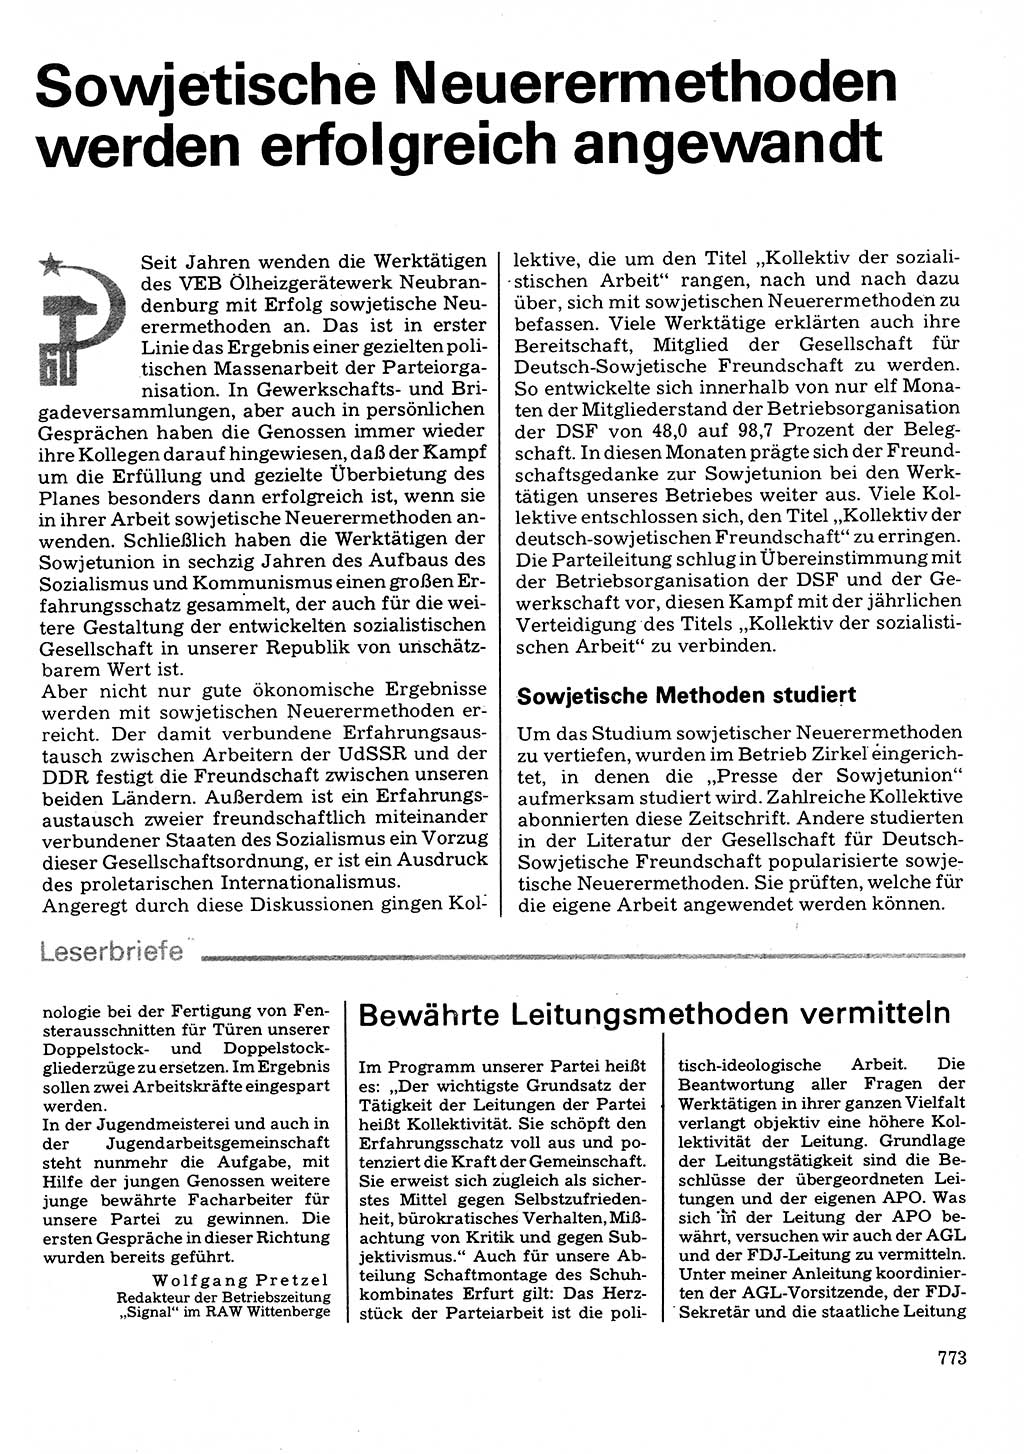 Neuer Weg (NW), Organ des Zentralkomitees (ZK) der SED (Sozialistische Einheitspartei Deutschlands) für Fragen des Parteilebens, 32. Jahrgang [Deutsche Demokratische Republik (DDR)] 1977, Seite 773 (NW ZK SED DDR 1977, S. 773)